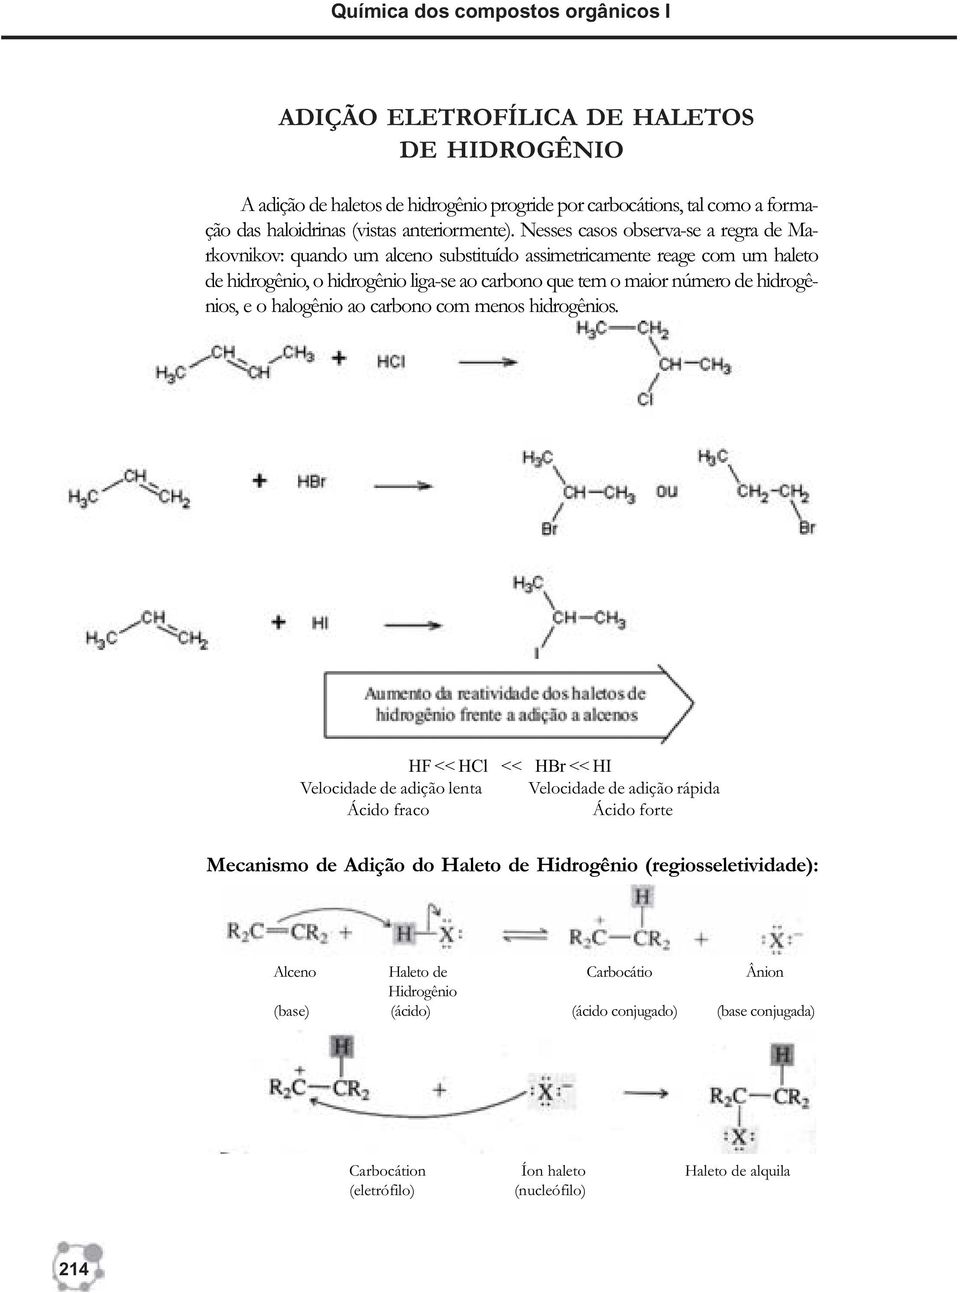 Nesses casos observa-se a regra de Markovnikov: quando um alceno substituído assimetricamente reage com um haleto de hidrogênio, o hidrogênio liga-se ao carbono que tem o maior número de